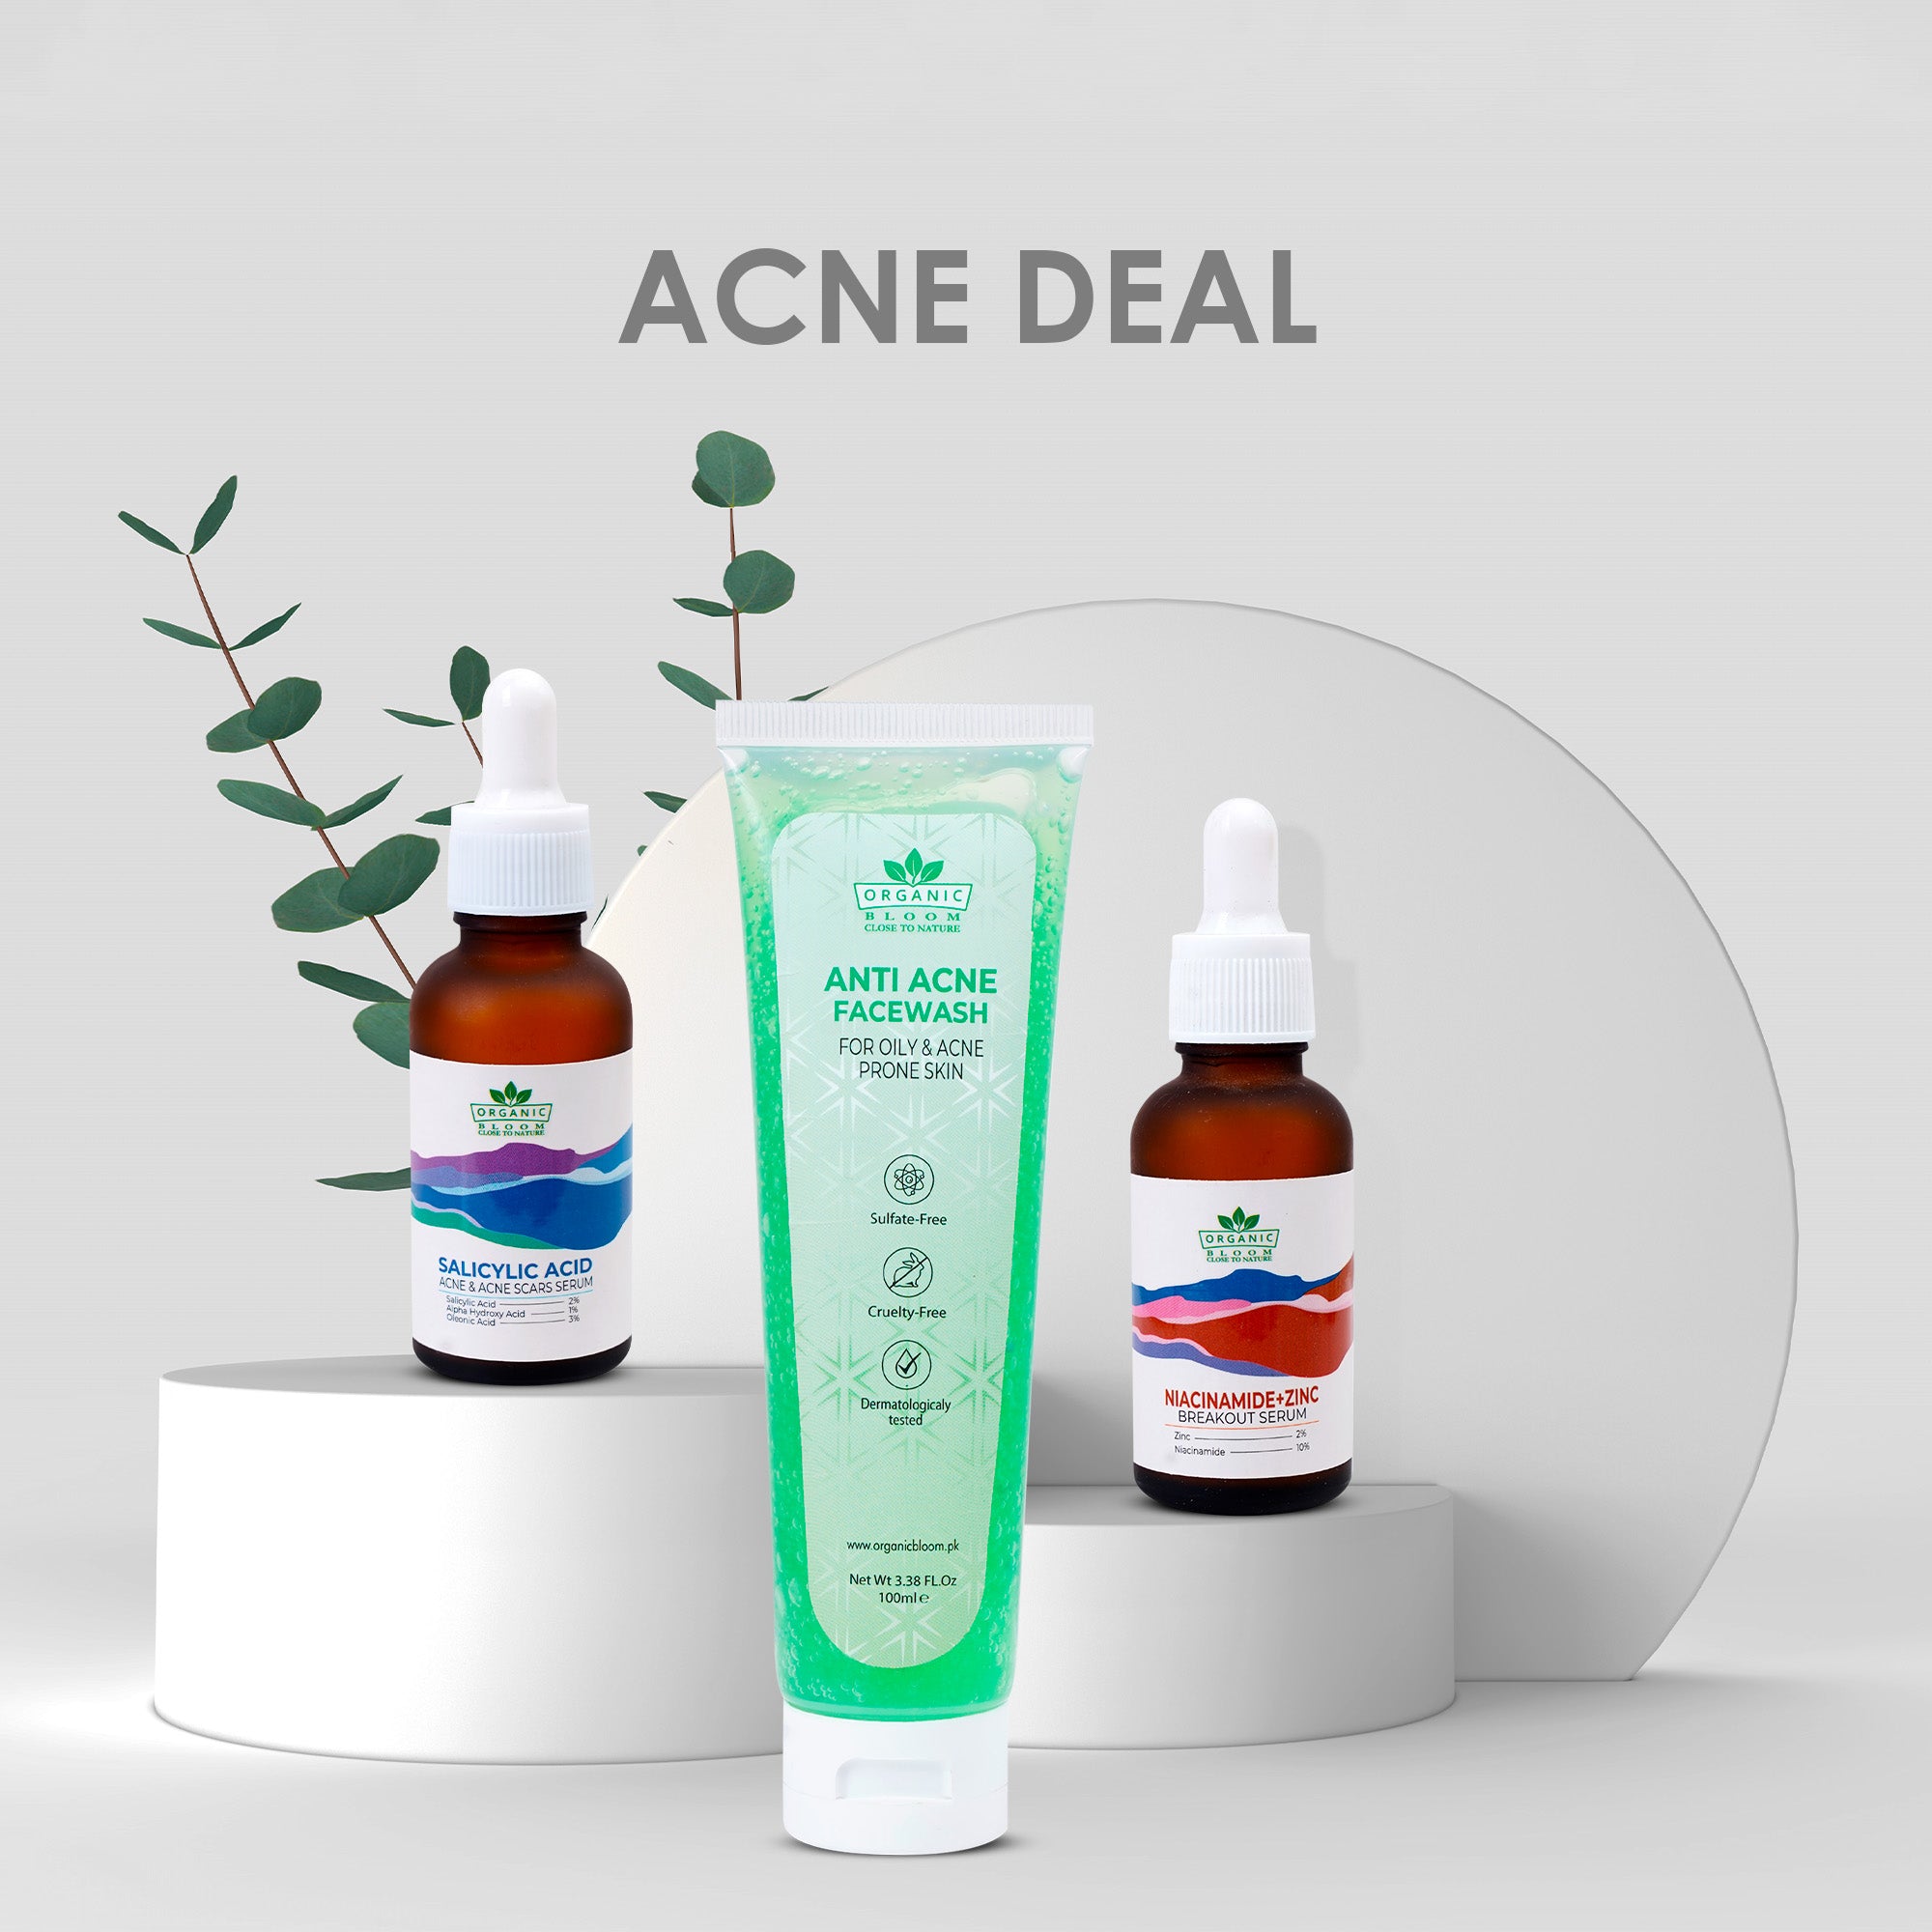 Acne deal ( Acne facewash+ Slycilic+ niacinamide zinc)